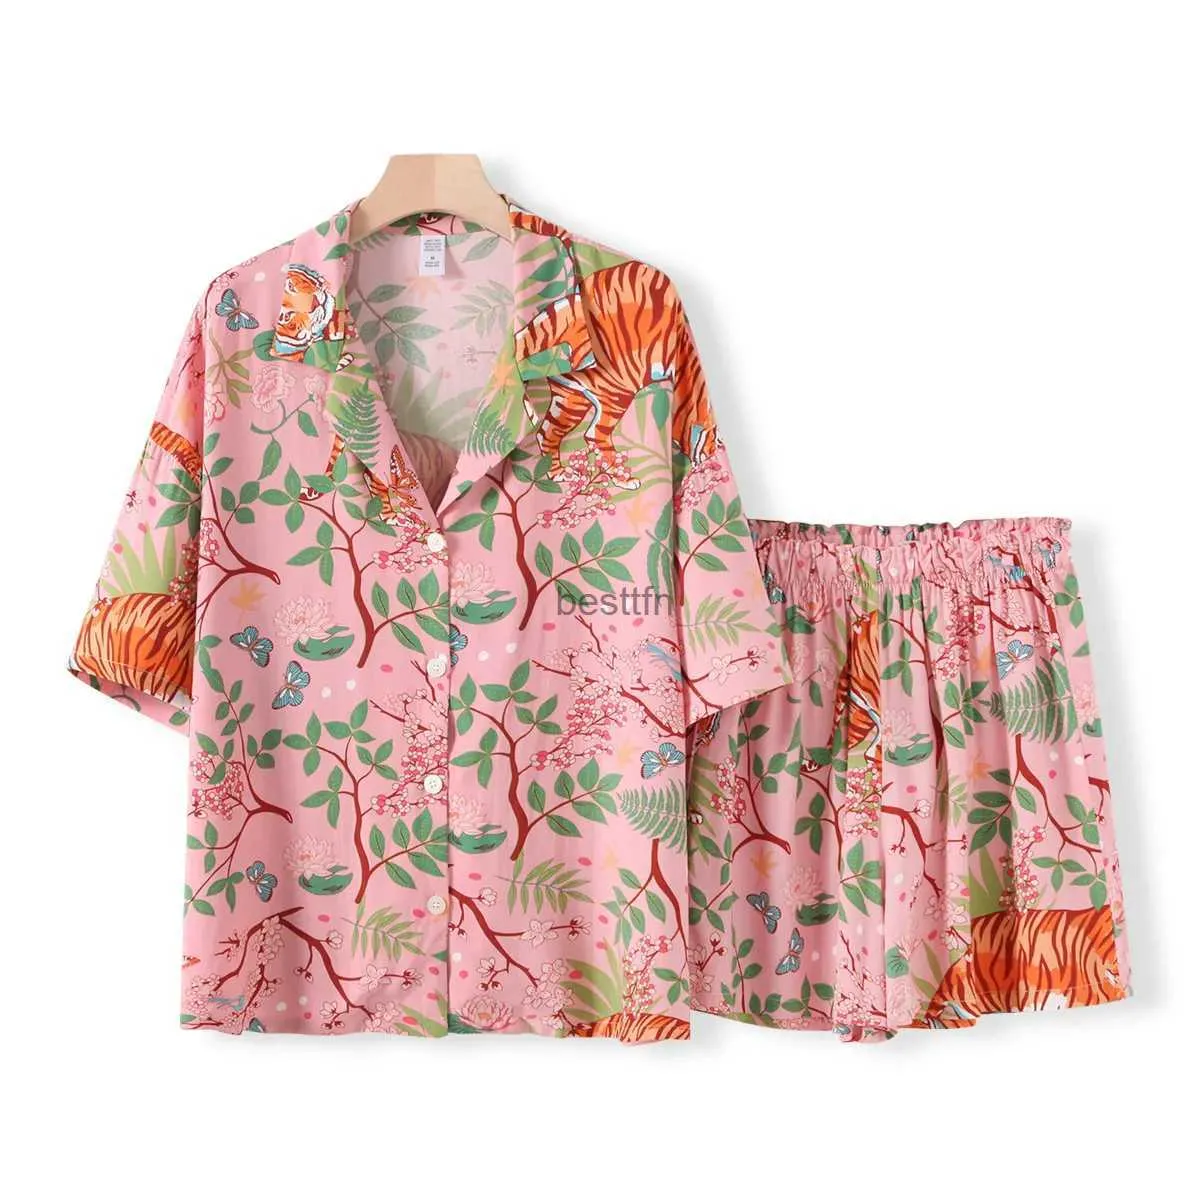 Женские шорты с принтом тигровых животных, пижамы, женский домашний костюм, удобный пижамный комплект из хлопка и вискозы для весенне-летней женской домашней одеждыL231005